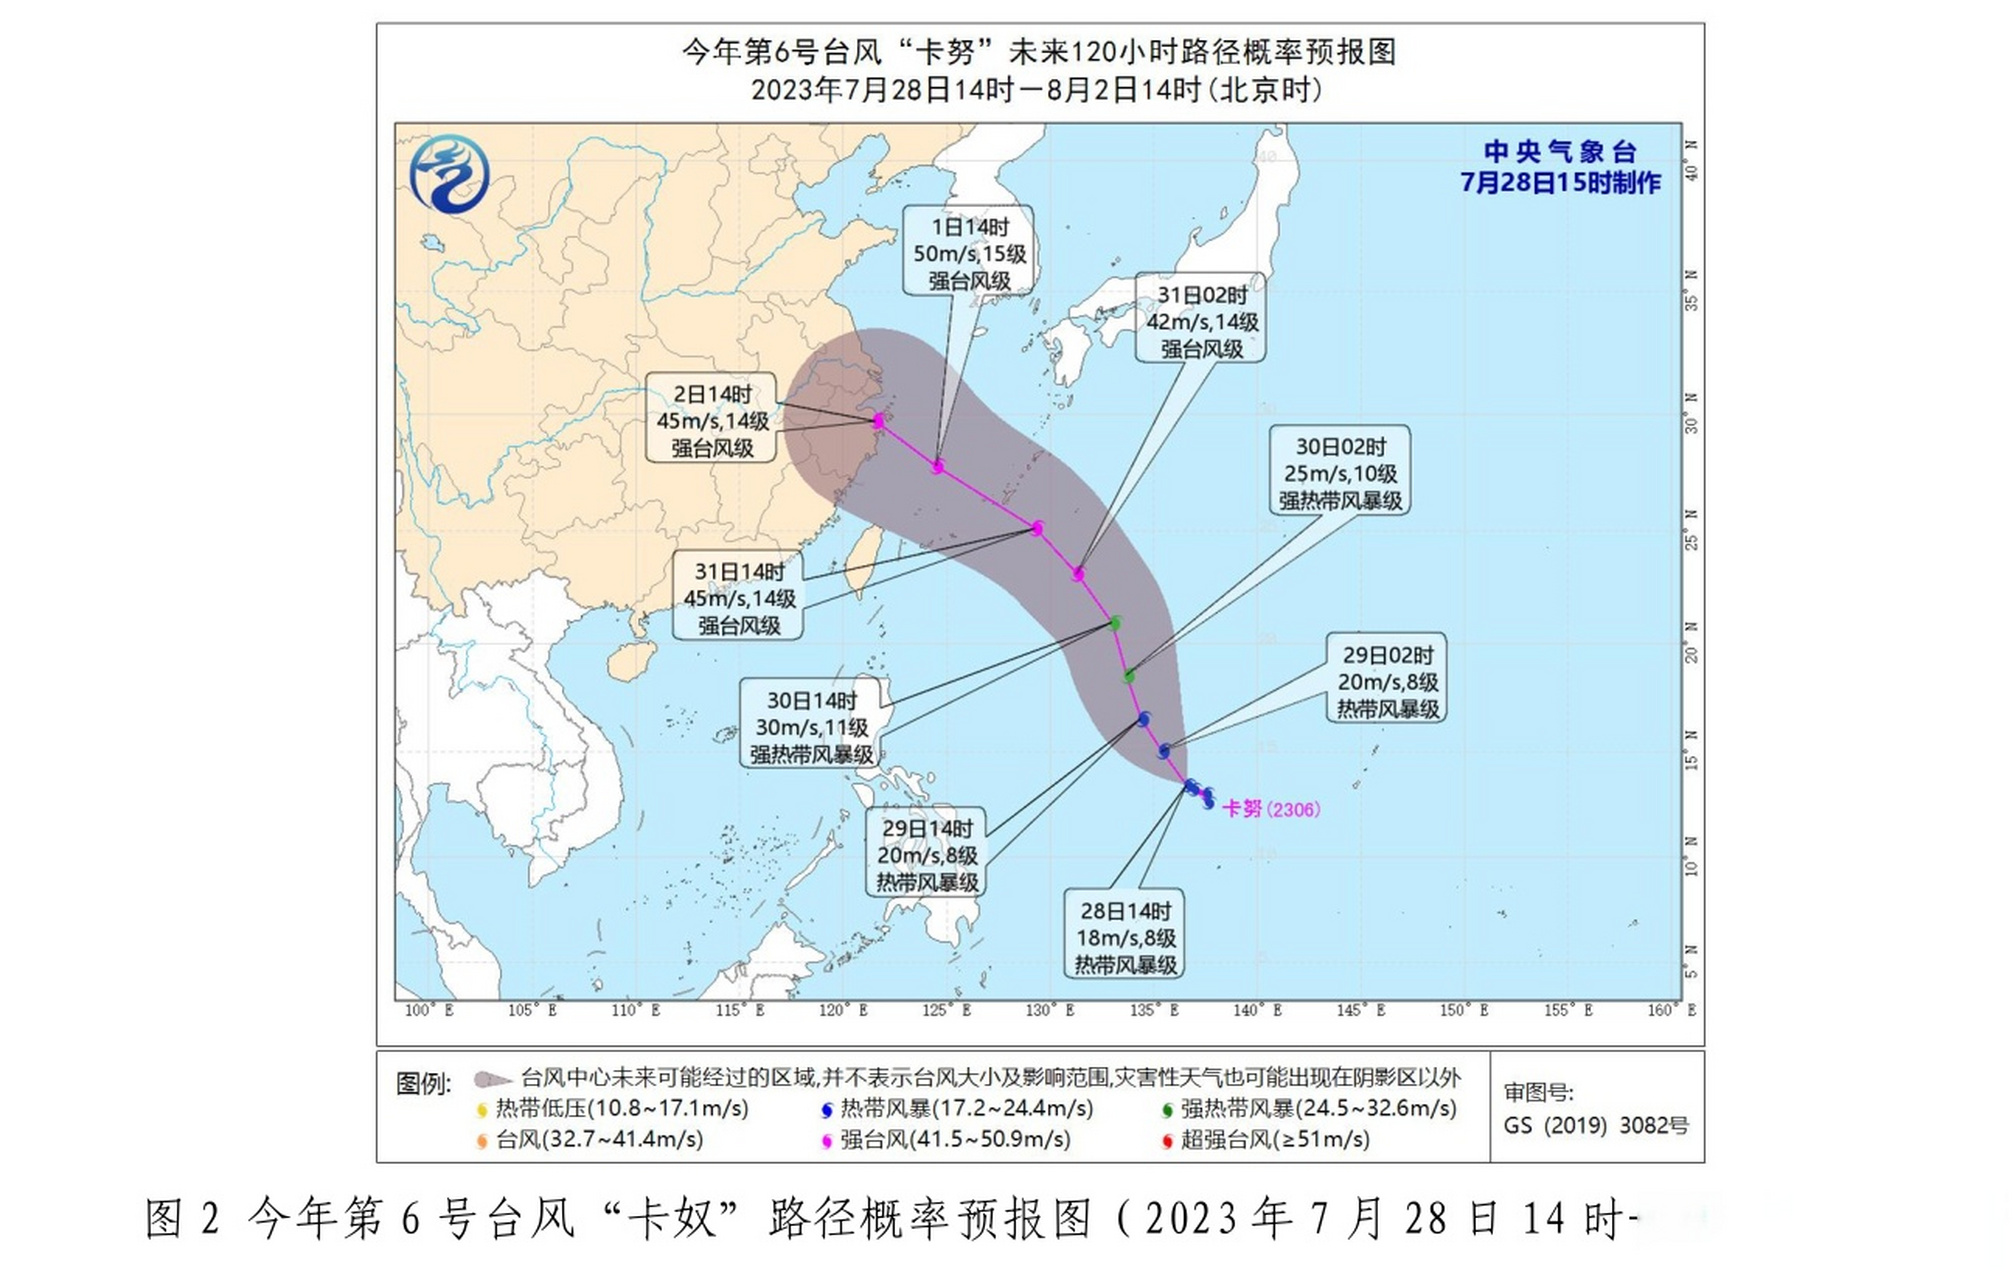 第 5 号台风杜苏芮影响预报 一,台风杜苏芮路径预报 今年第 5 号